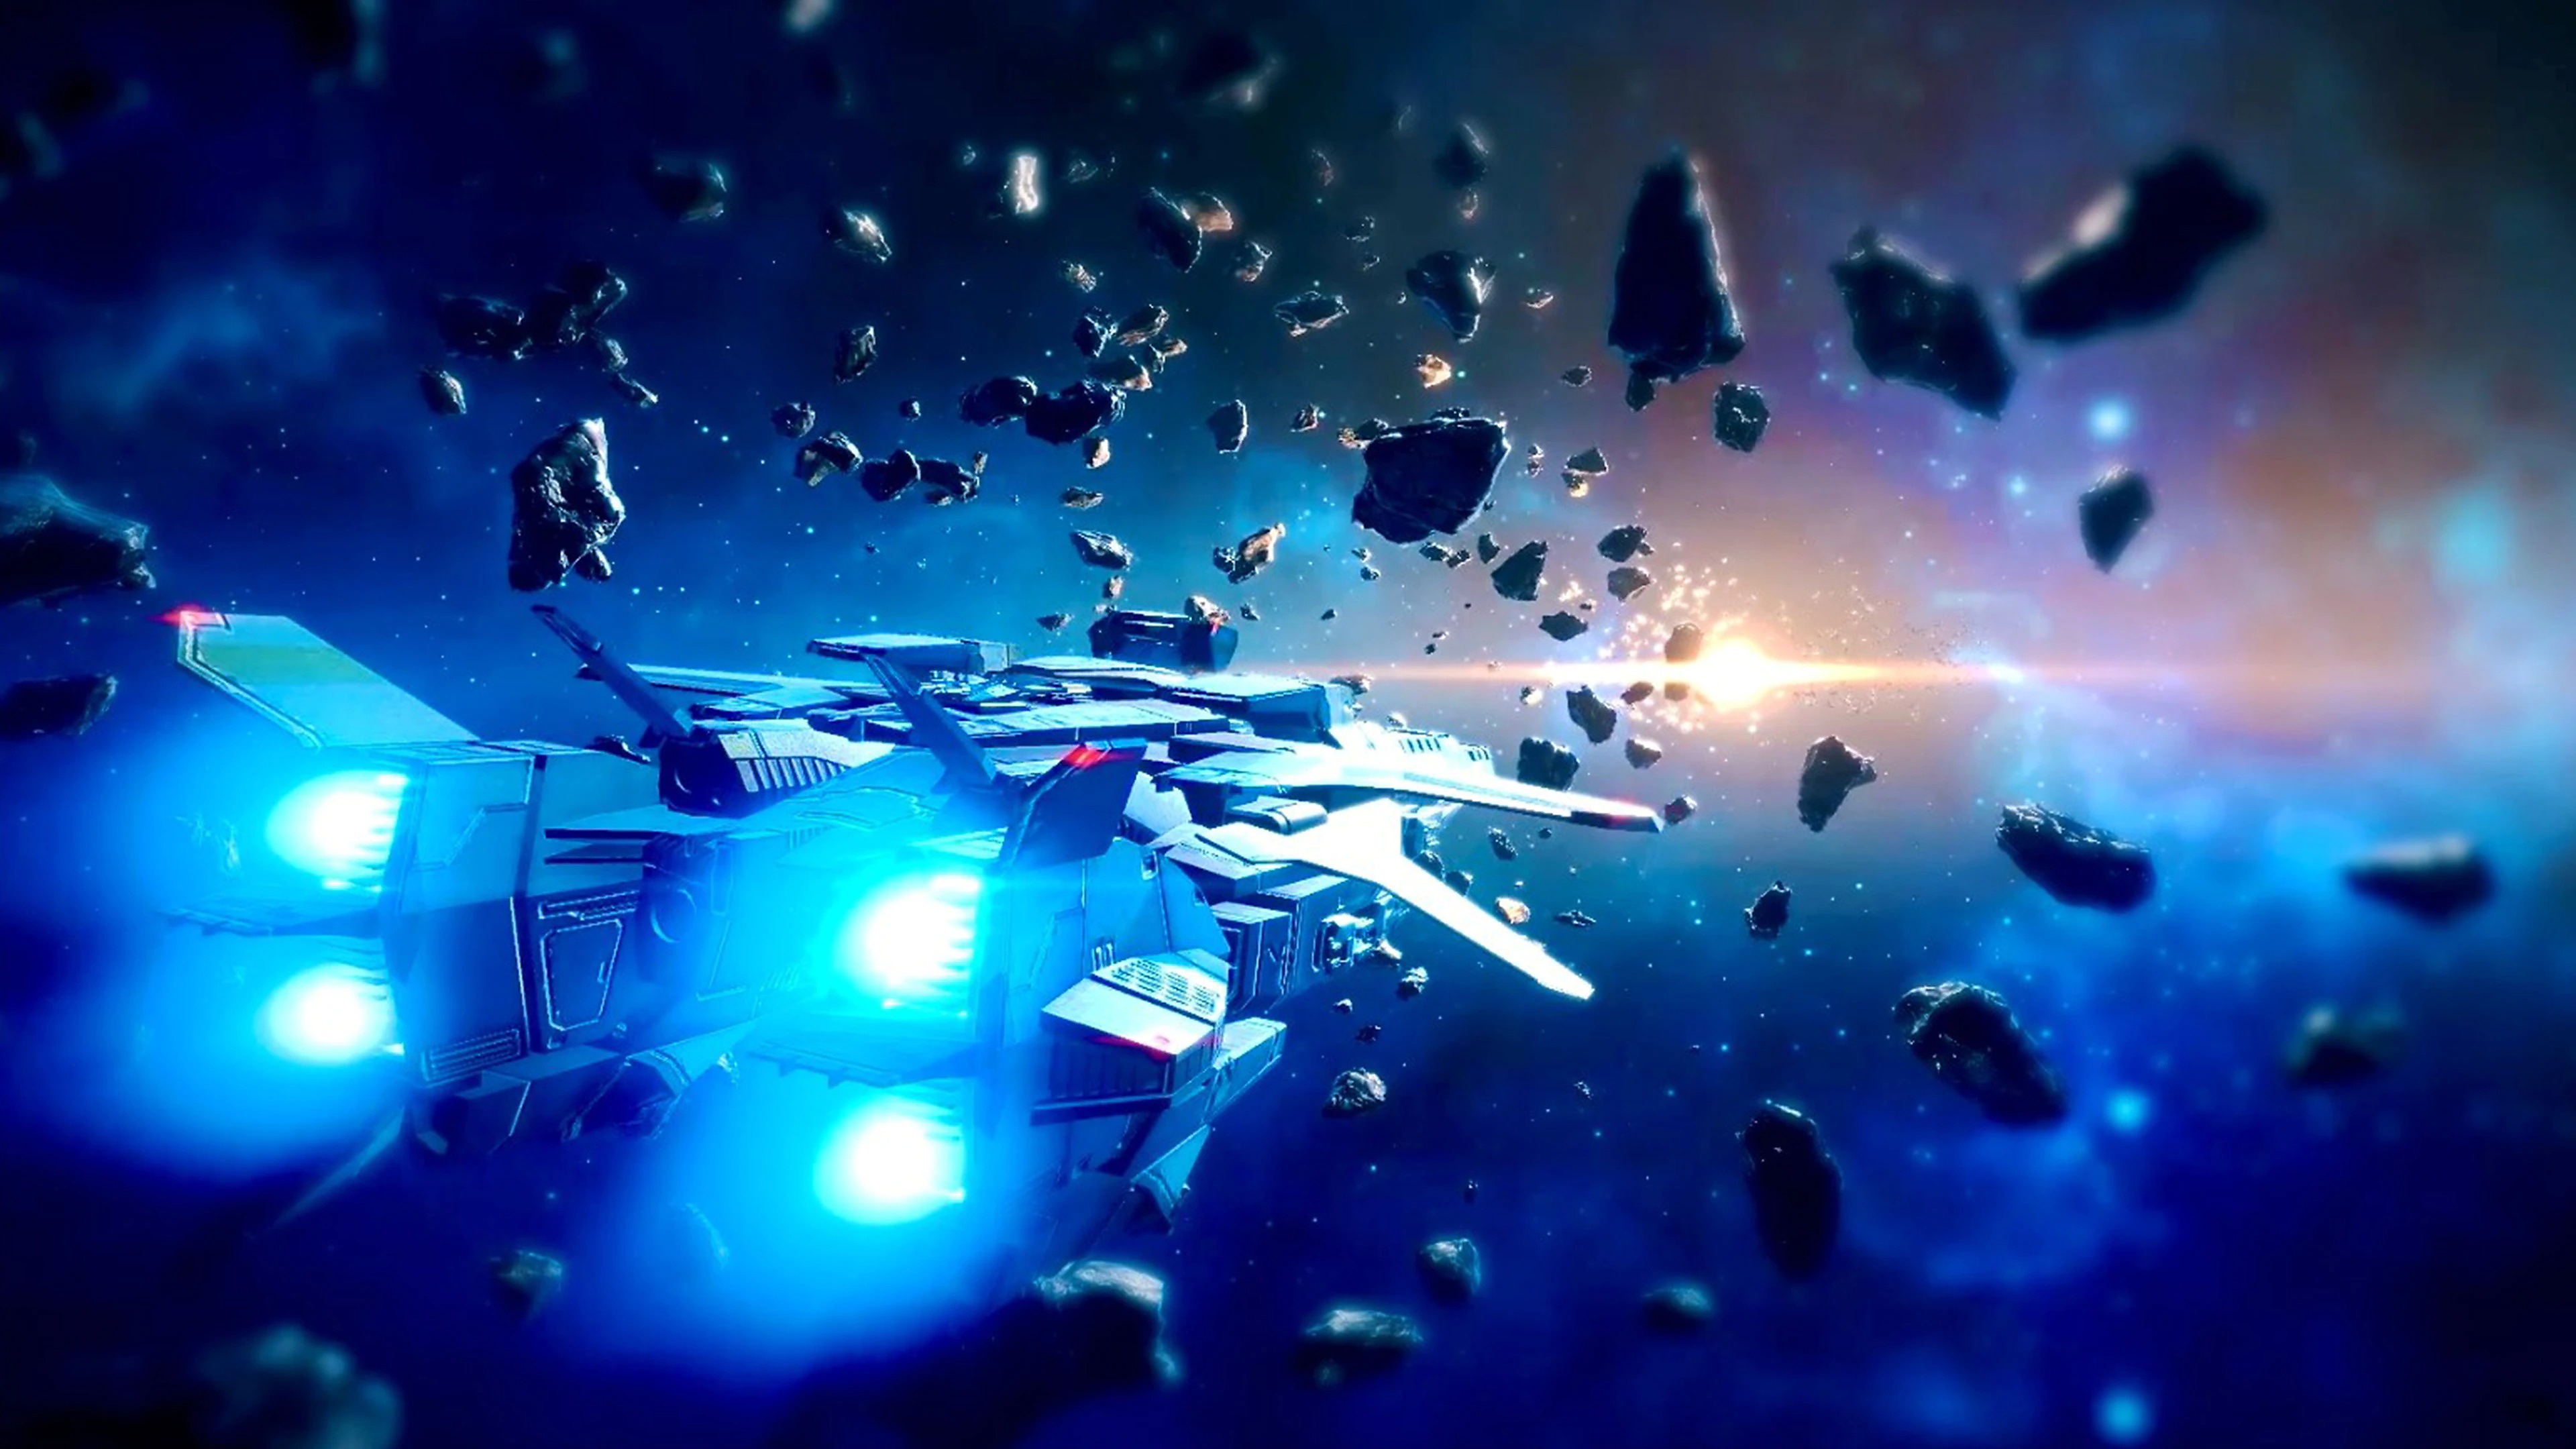 Relayer – skärmbild på ett rymdskepp som flyger mellan stenar i rymden